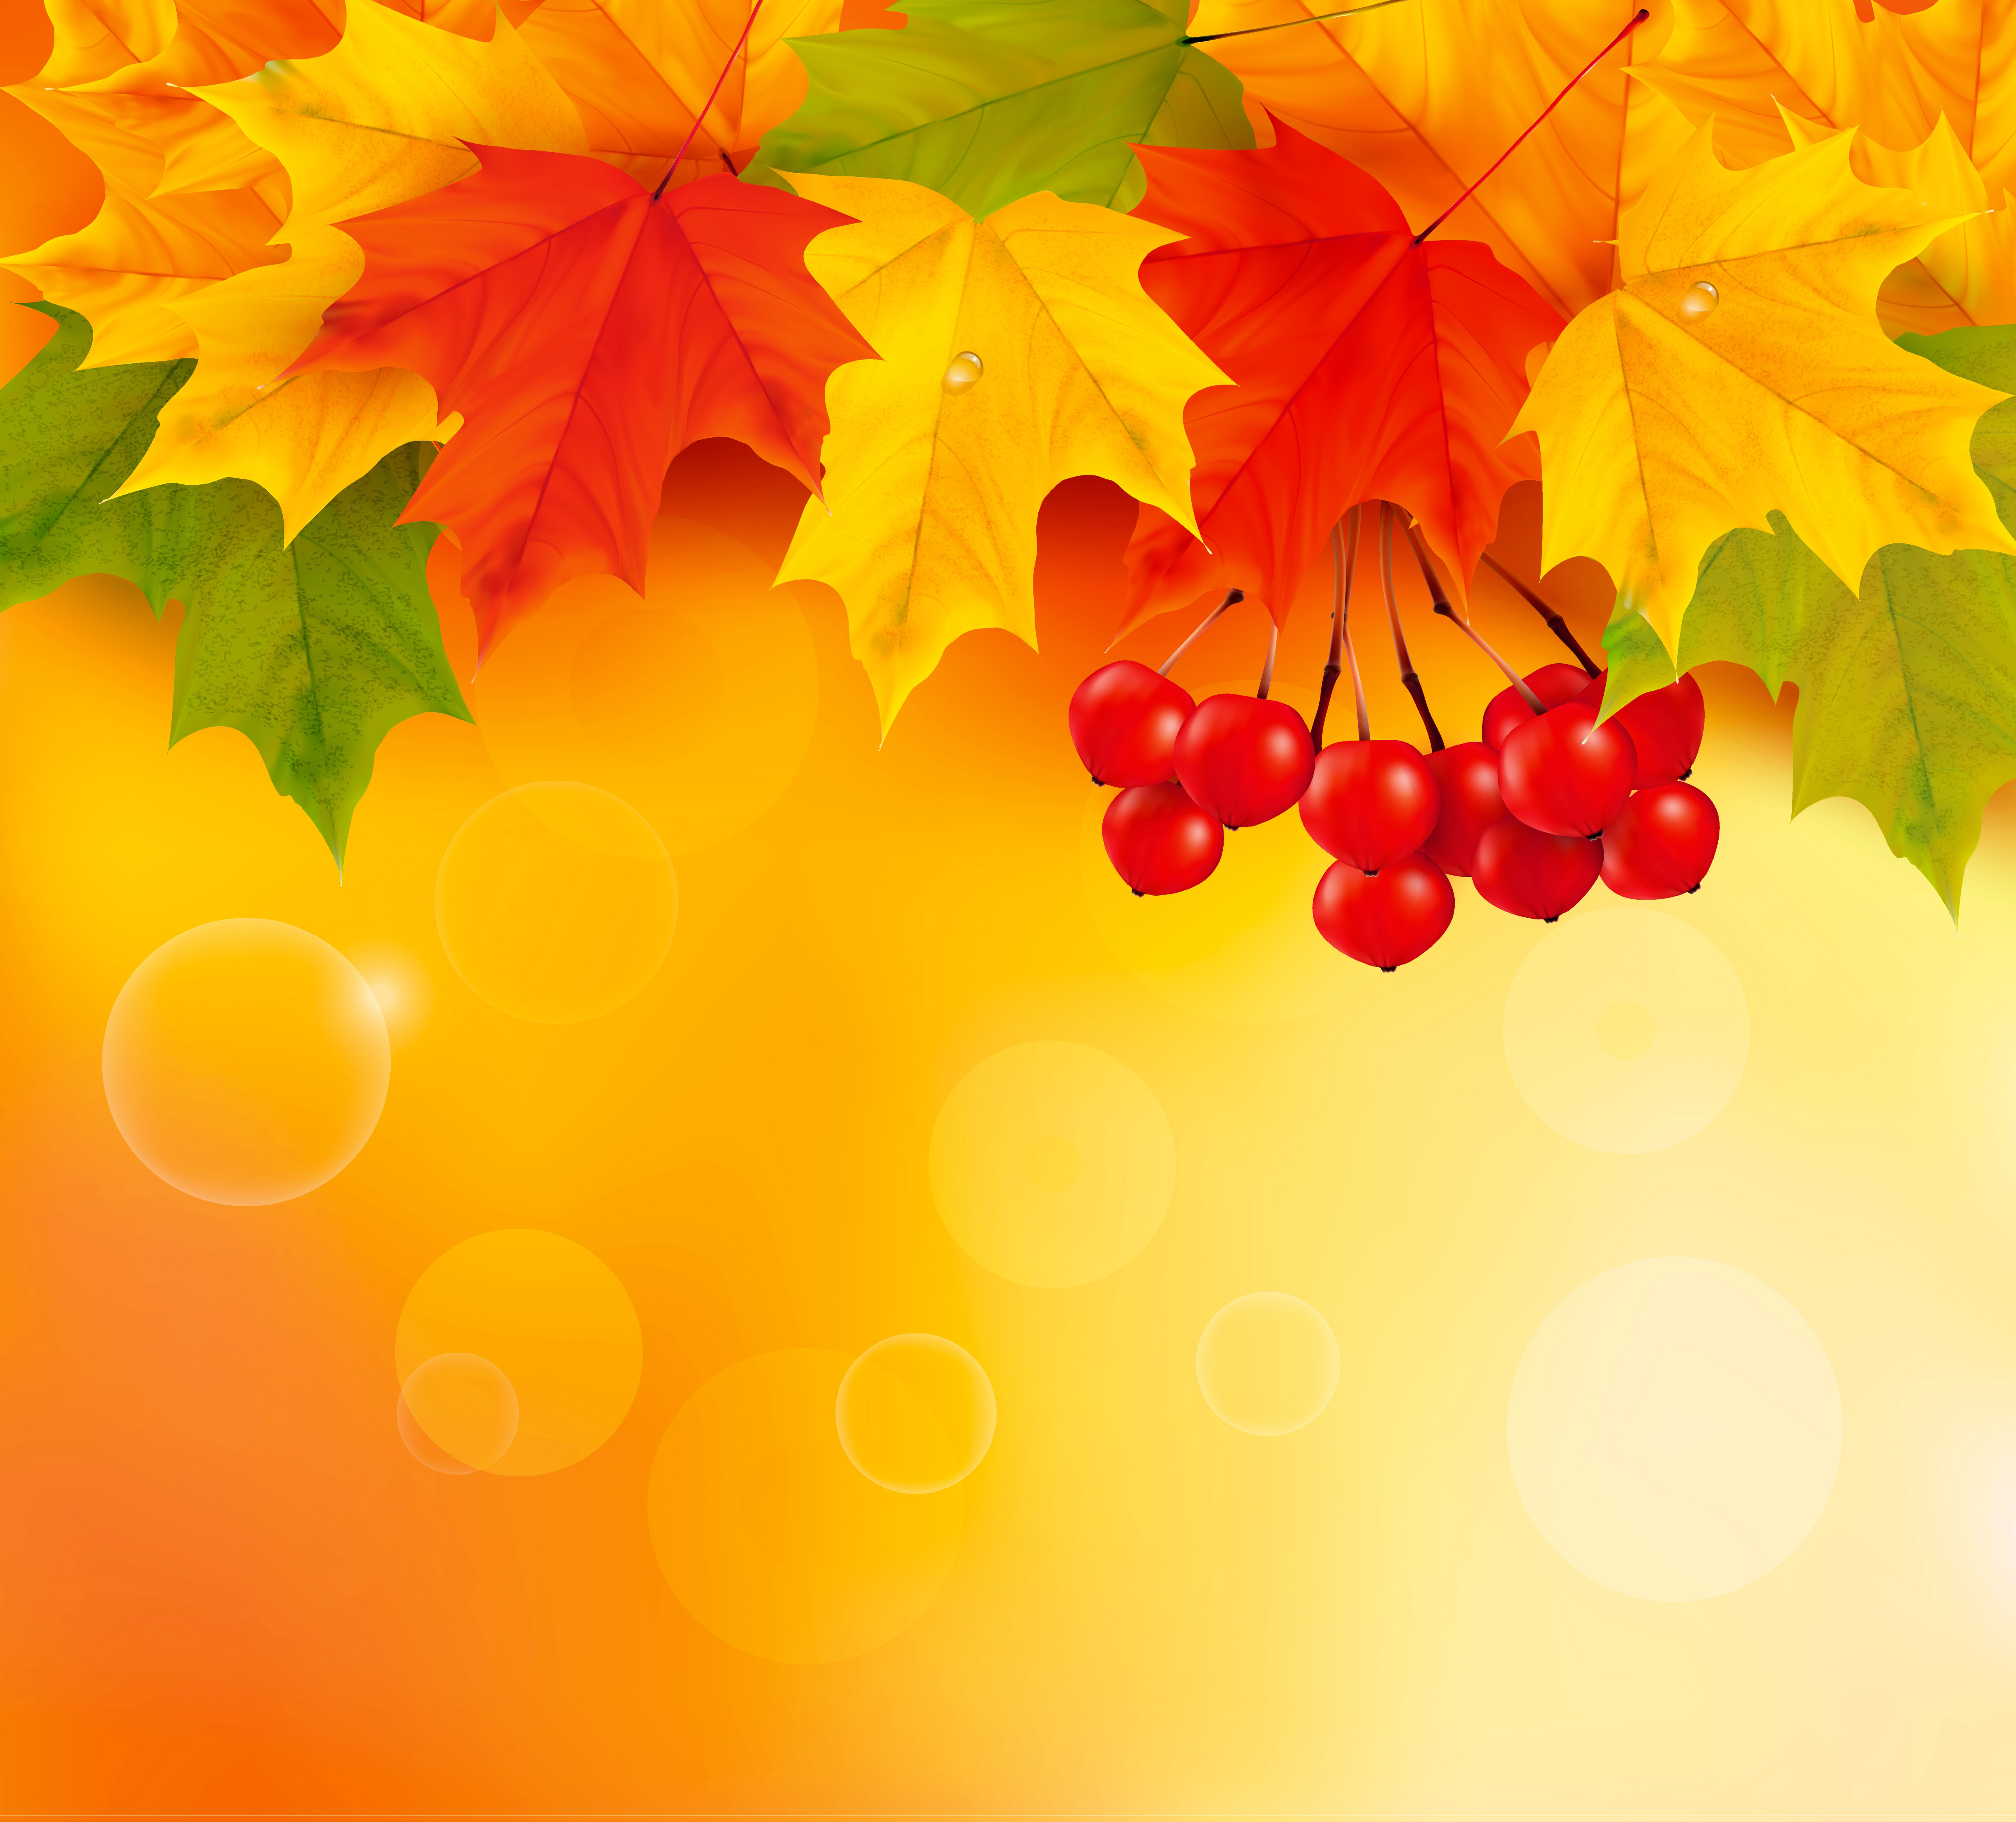 Những chiếc lá rơi của mùa thu luôn đem lại cho chúng ta cảm giác ấm áp và thơ mộng. Hãy cùng xem những hình ảnh về fall leaves để ngắm nhìn sắc đỏ vàng của mùa lá rụng nhé!